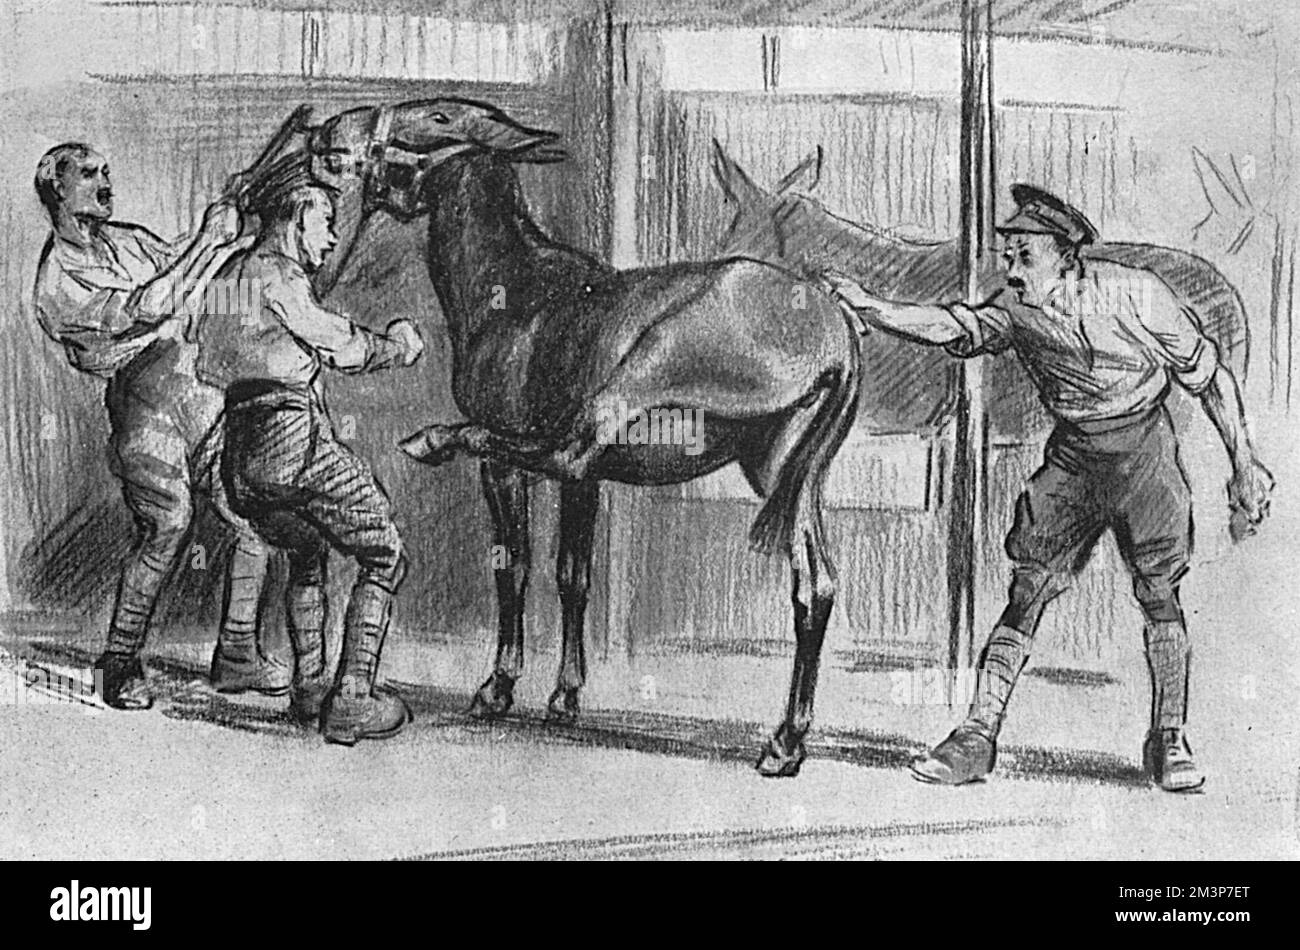 Tre soldati che lottano per sposare un mulo irruente nel suo stallo con uno di loro che brontola: "Nah tehn, 'gambe senza trito!" Data: 1916 Foto Stock